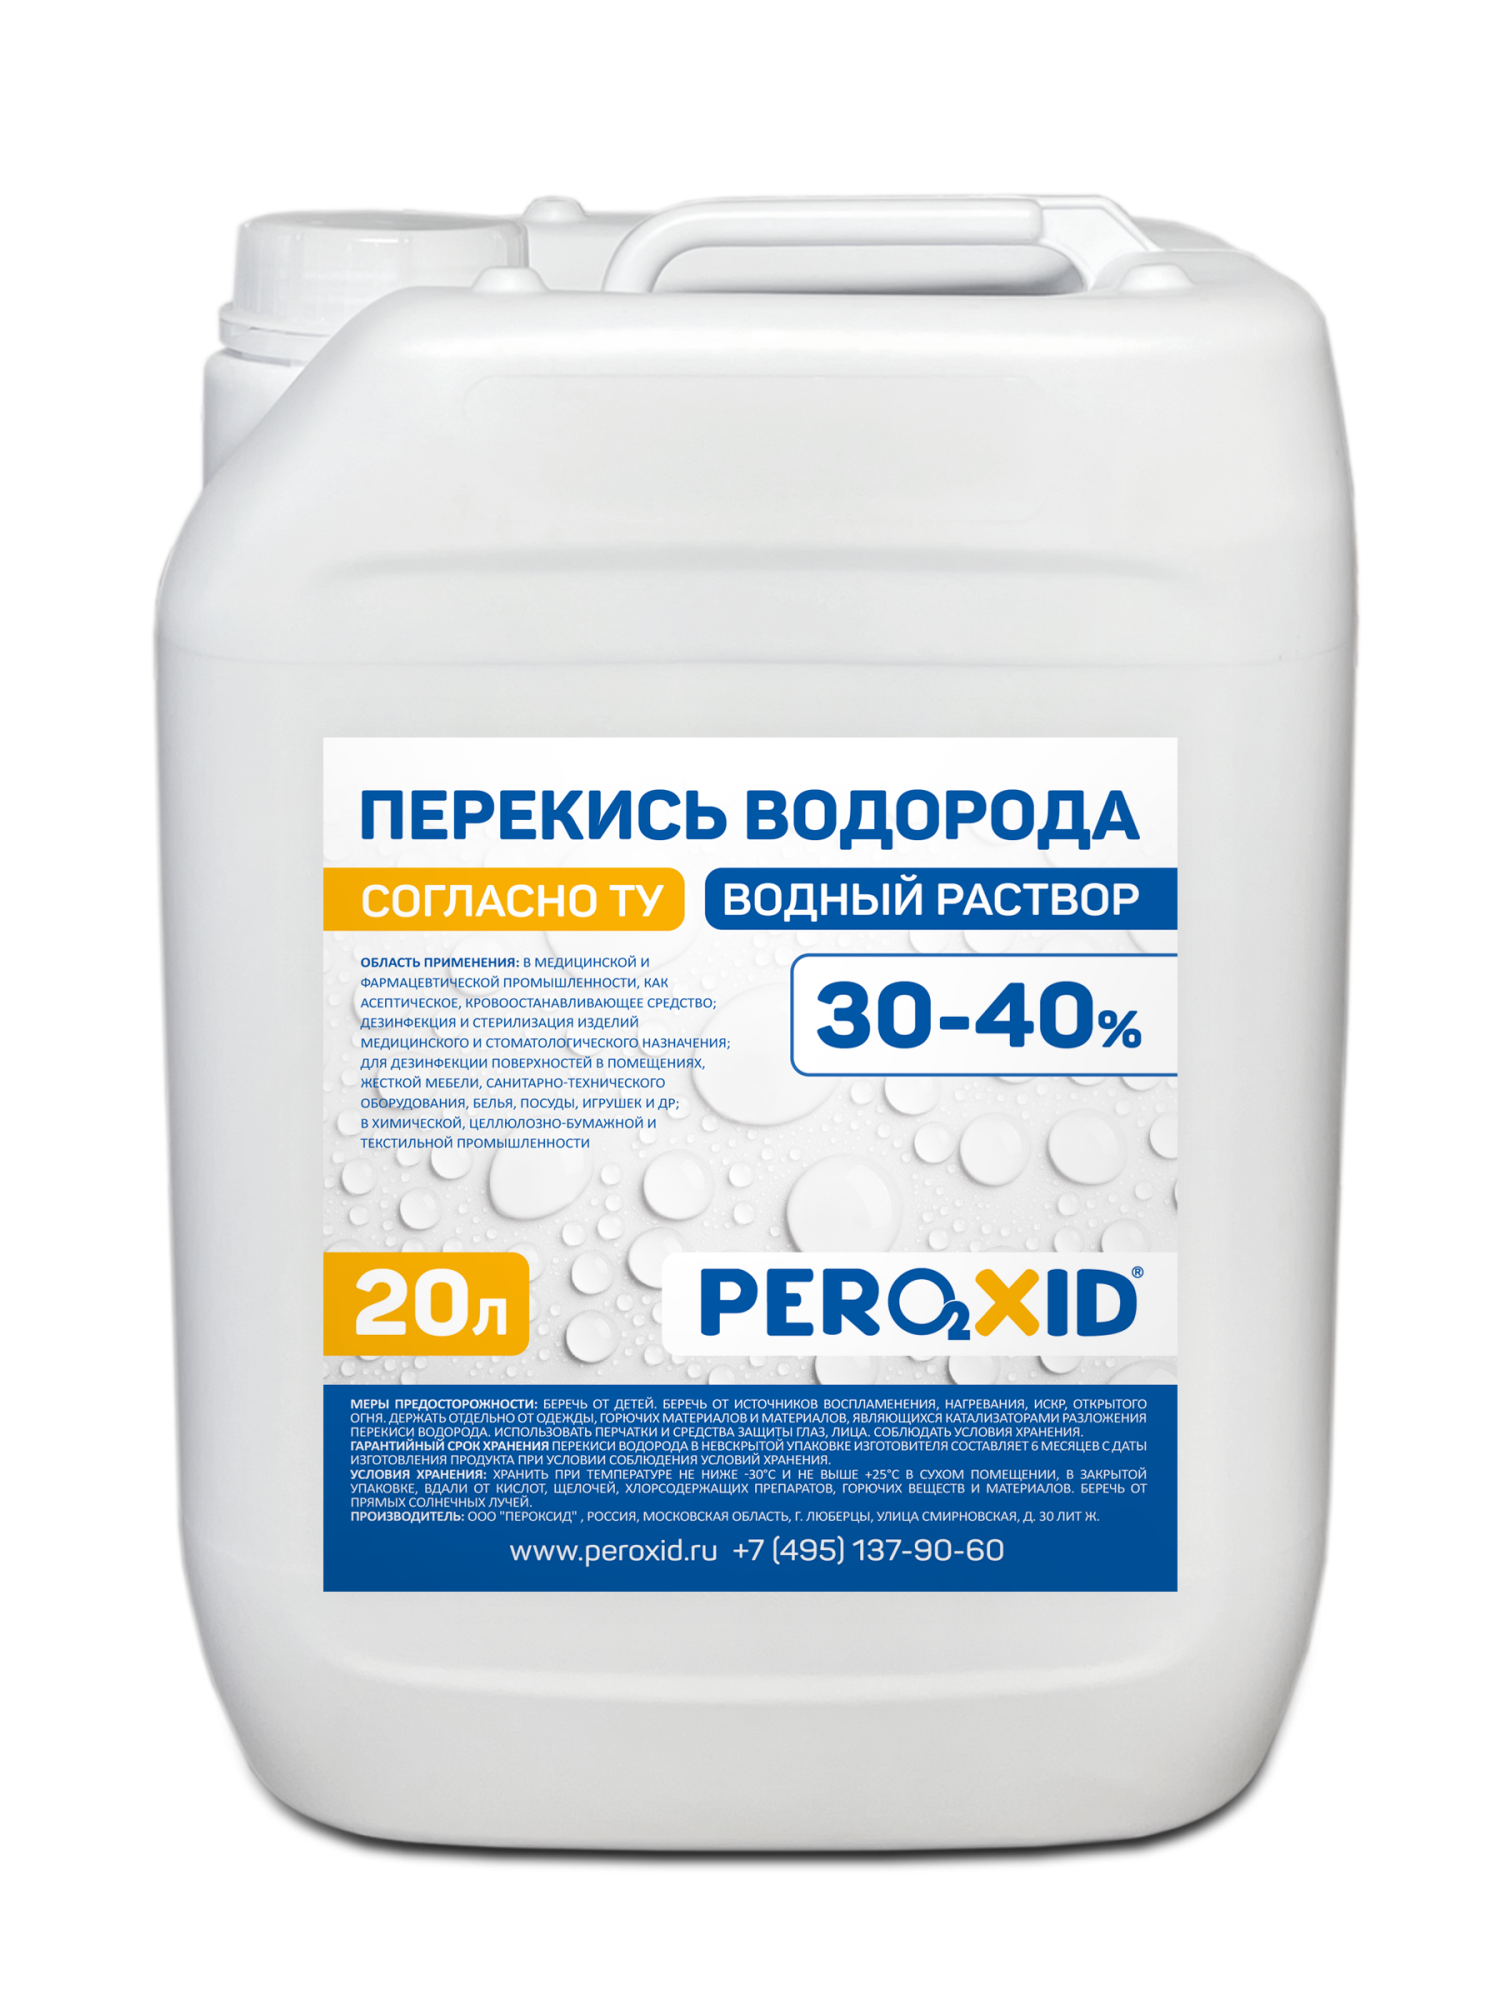 Перекись водорода водный раствор PEROXID 30-40% марка  ТУ 2123-001-25665344-2008 20 л/24 кг